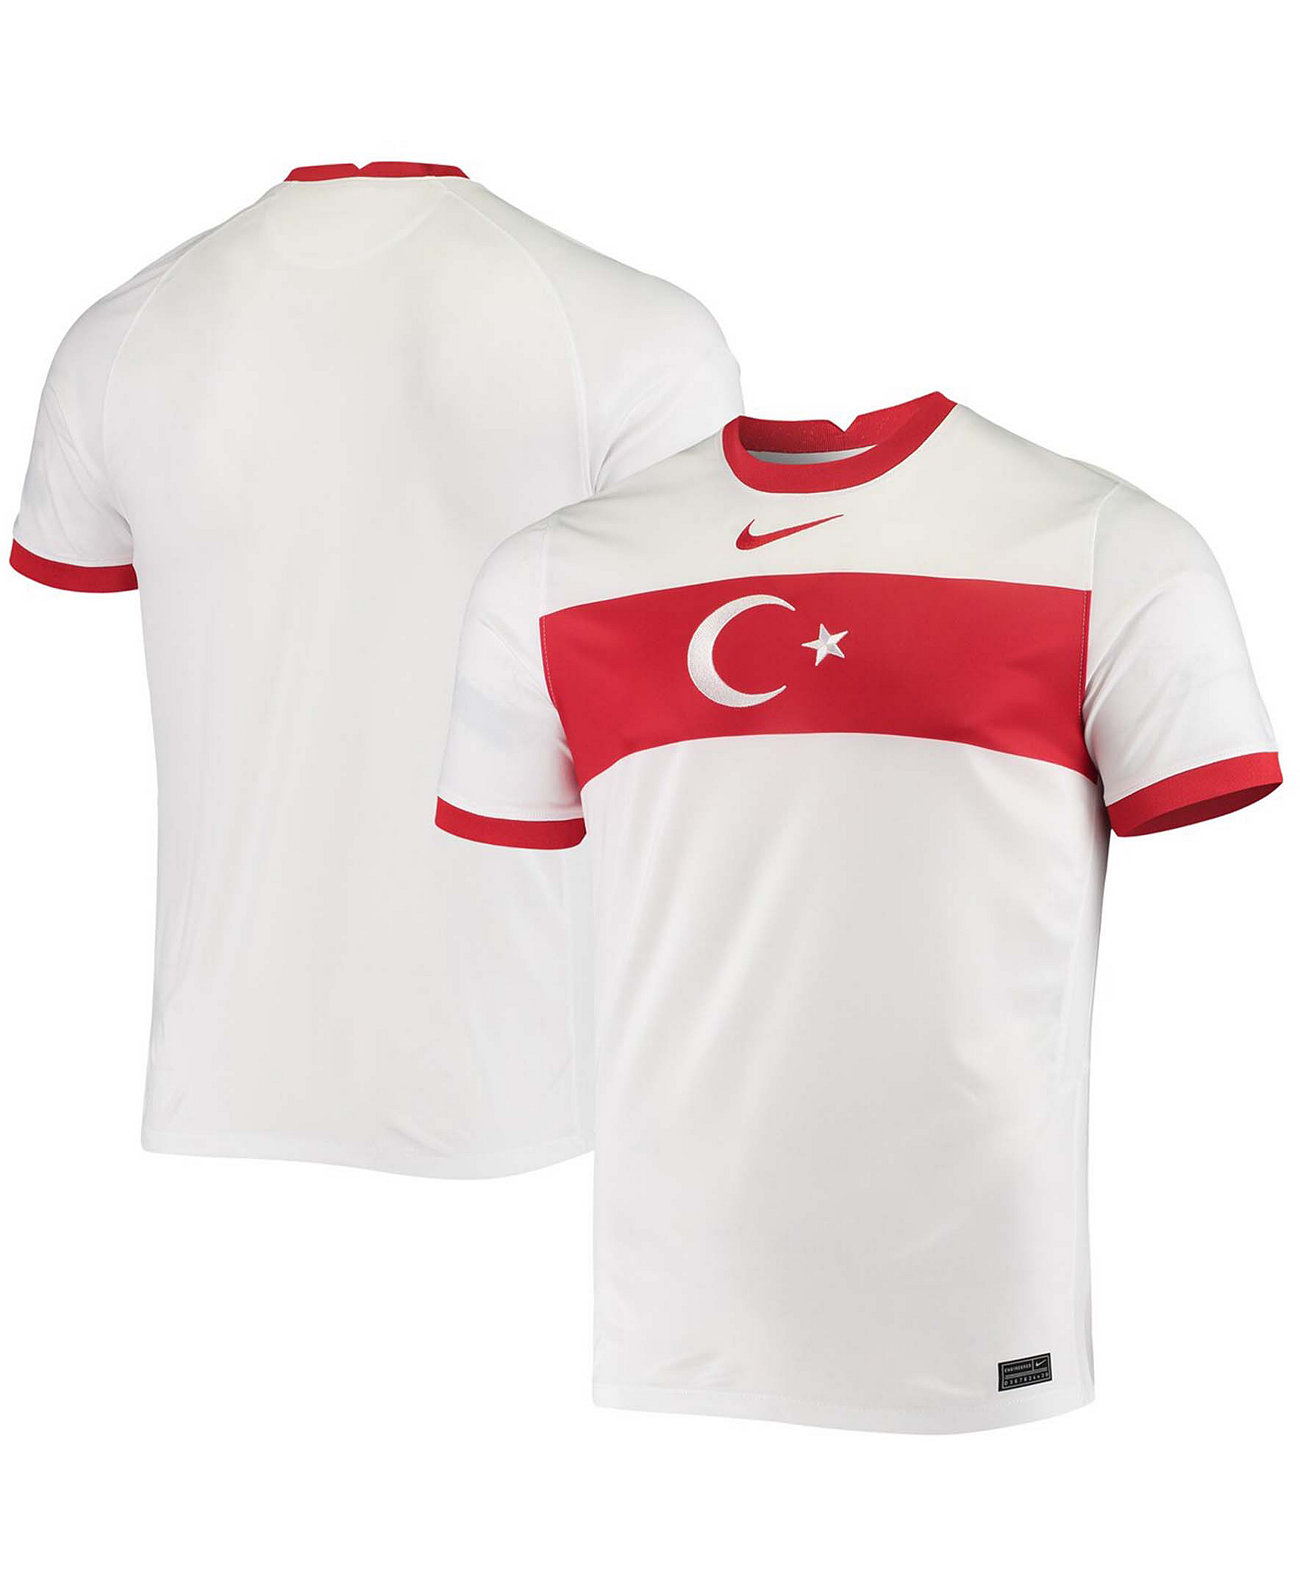 Футболка сборной Турции. Nike в Турции. Майка сборный тур Турция белый. Turkish Jersey. Найк турция сайт